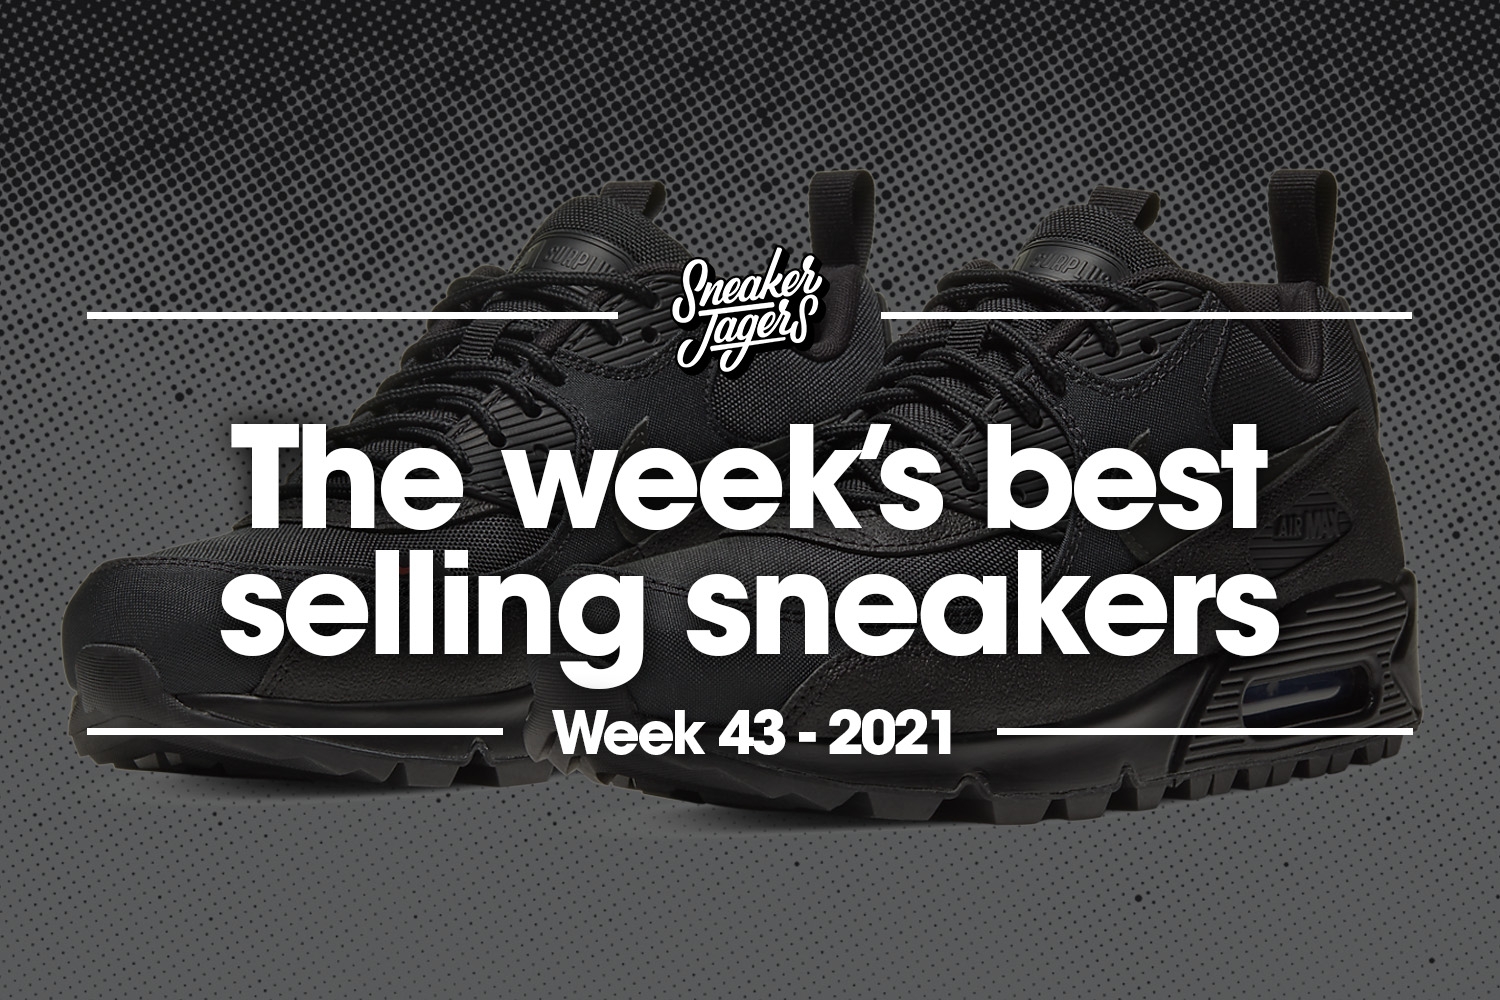 De 5 bestverkochte sneakers van week 43